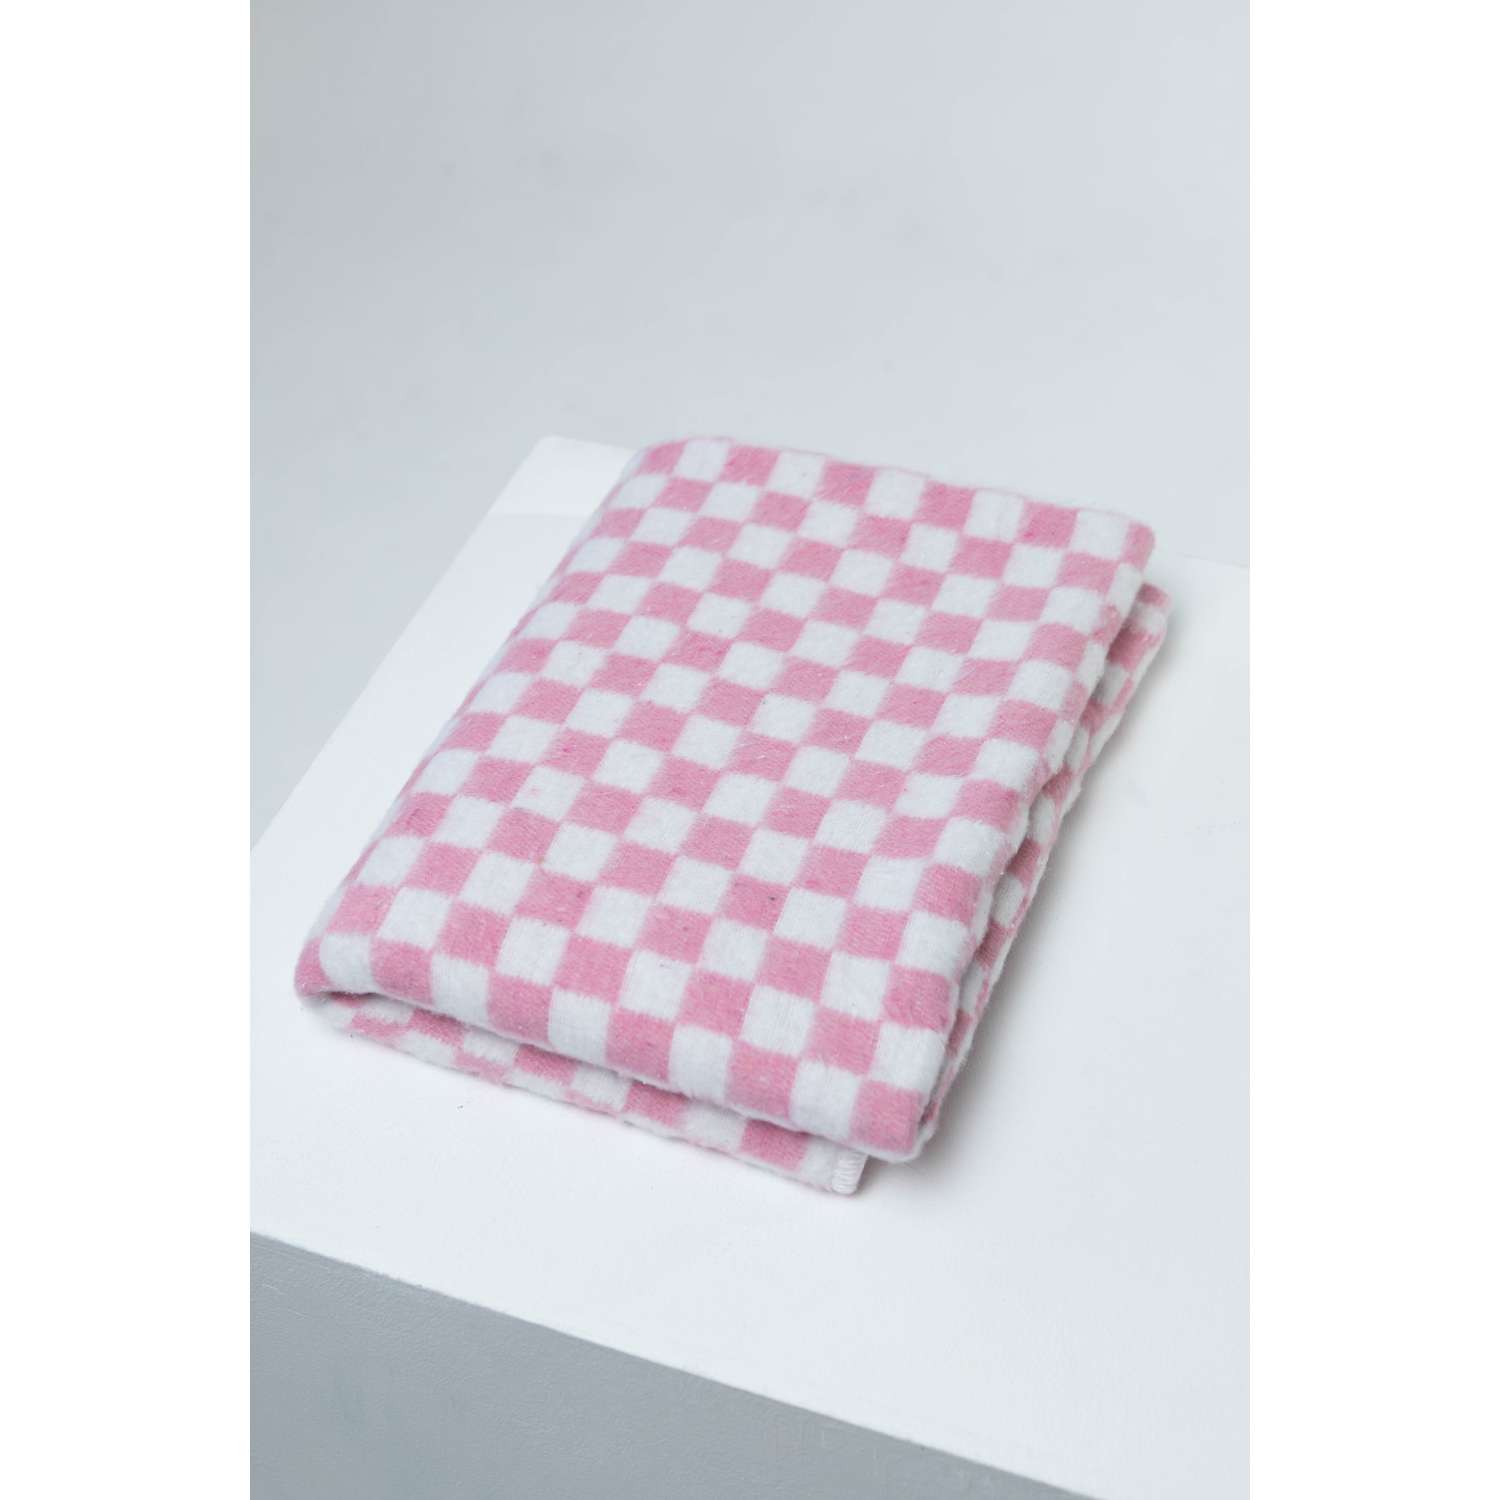 Одеяло байковое Суконная фабрика г. Шуя 140х205 рисунок клетка розовый - фото 7